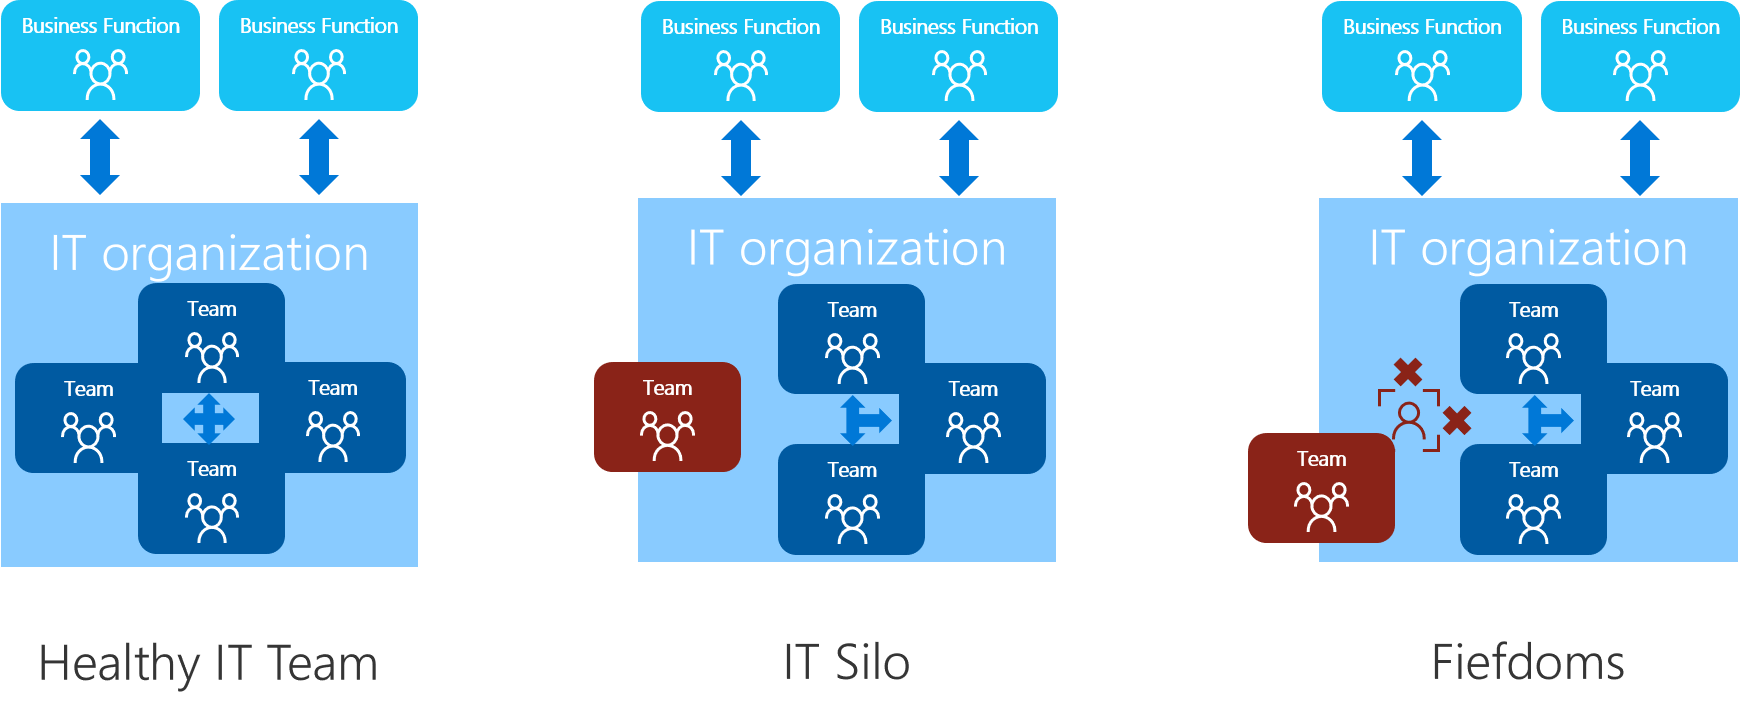 Diagrama que mostra uma comparação de equipes íntegras e antipadrões organizacionais.